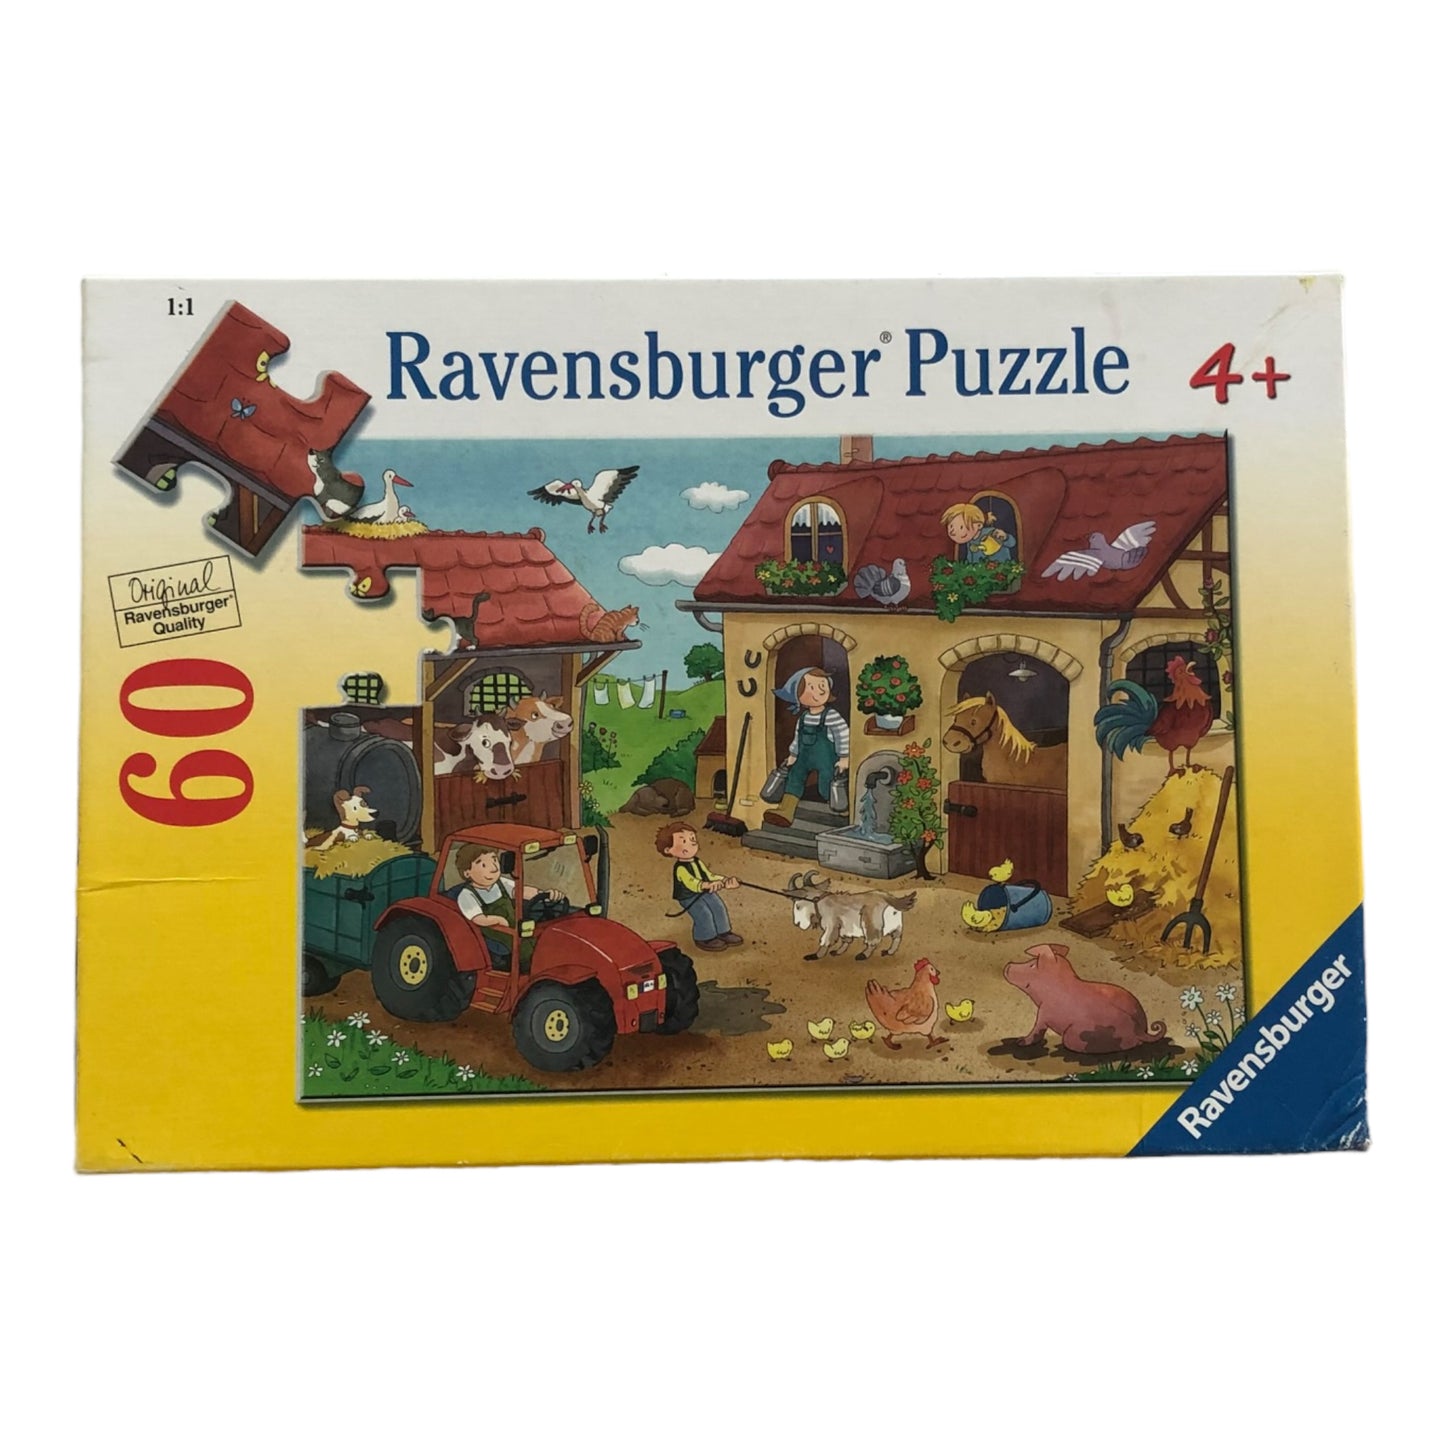 Ravensburger Puzzle 60 pieces - The farm